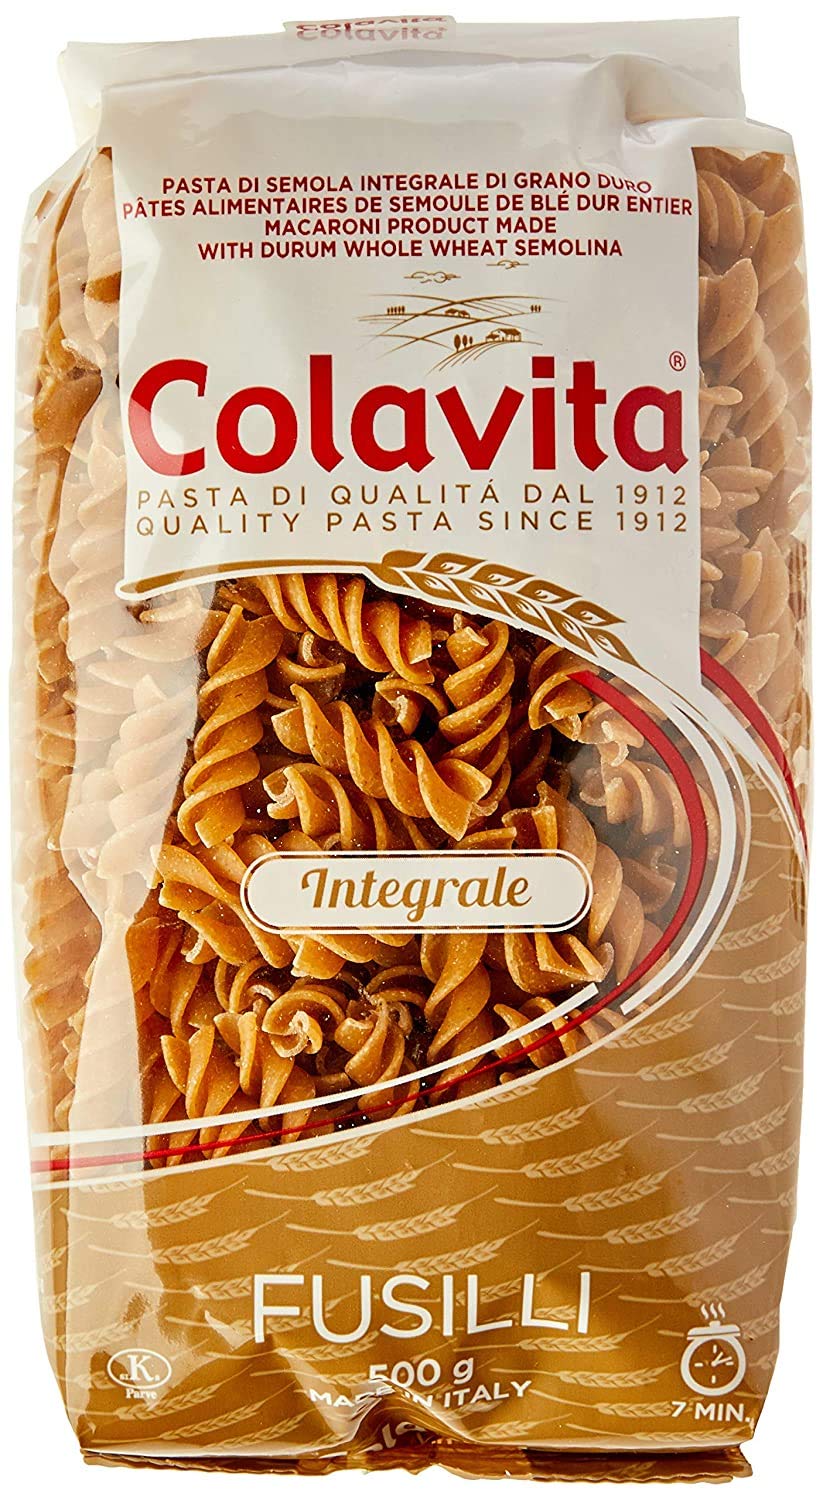 Colavita Fusilli Whole Wheat Pasta Image